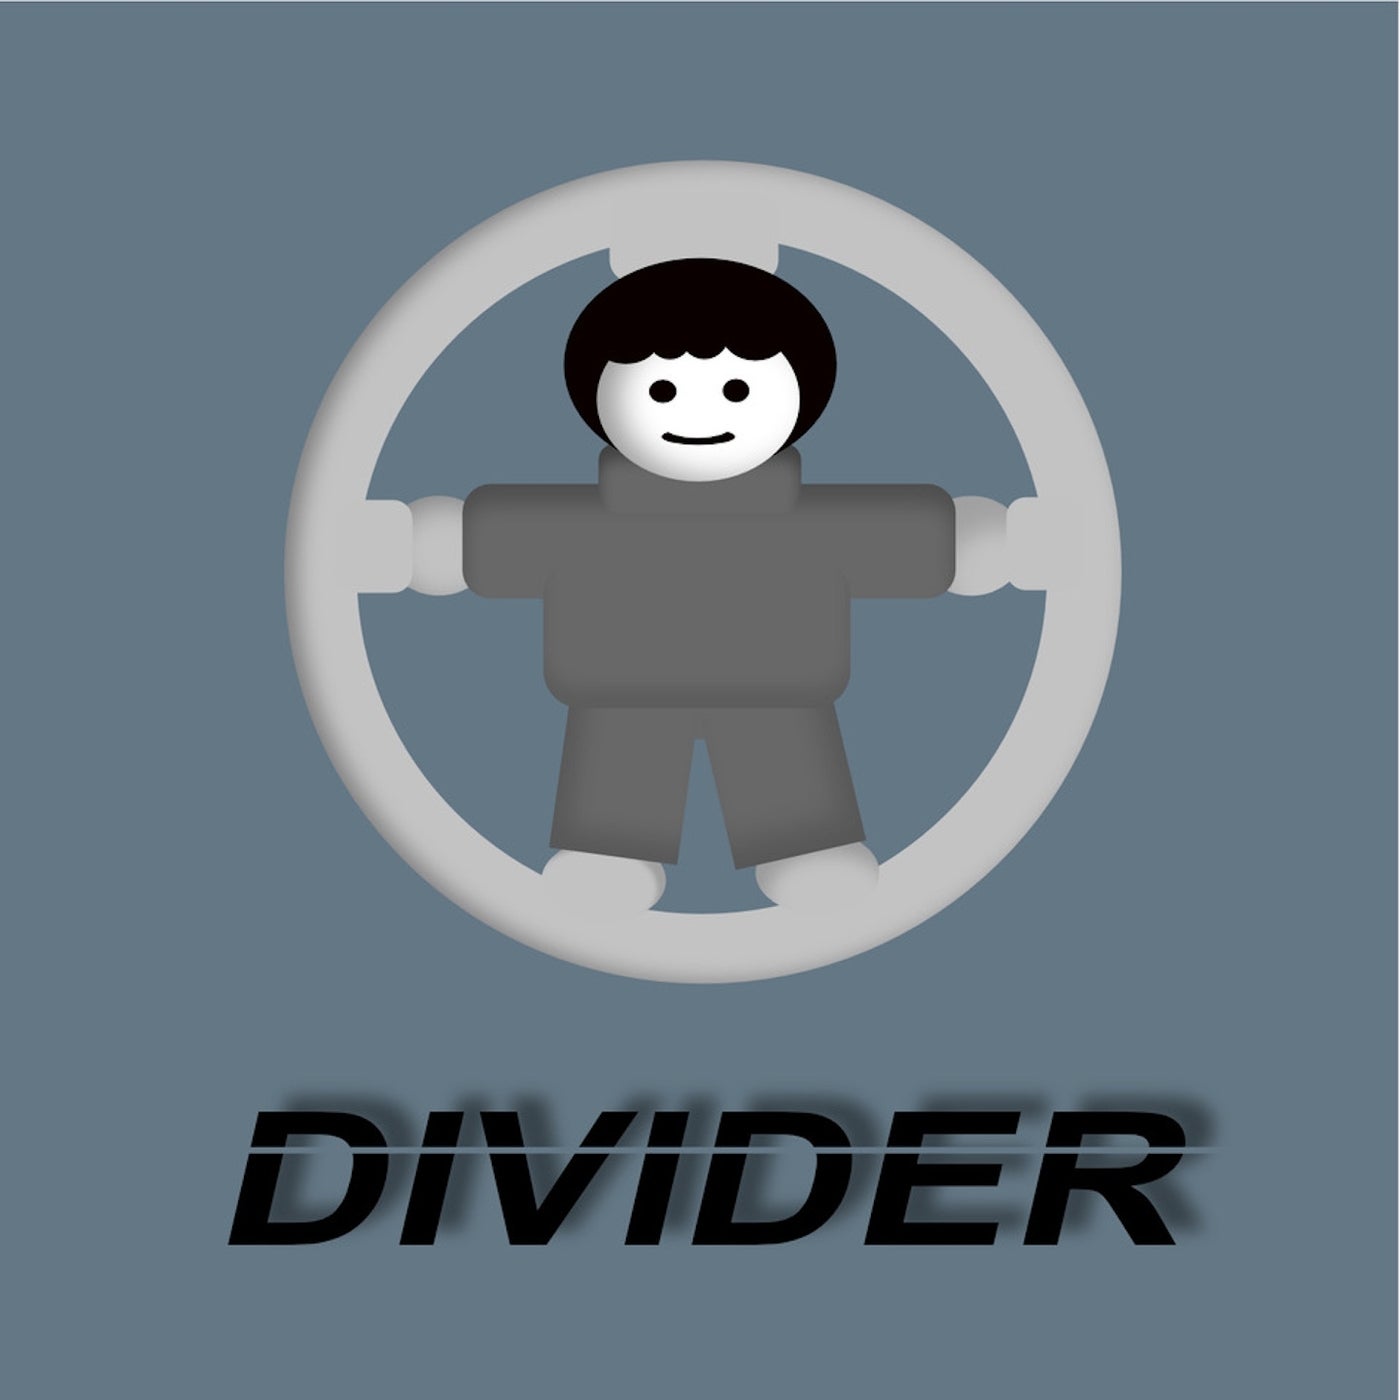 Divider